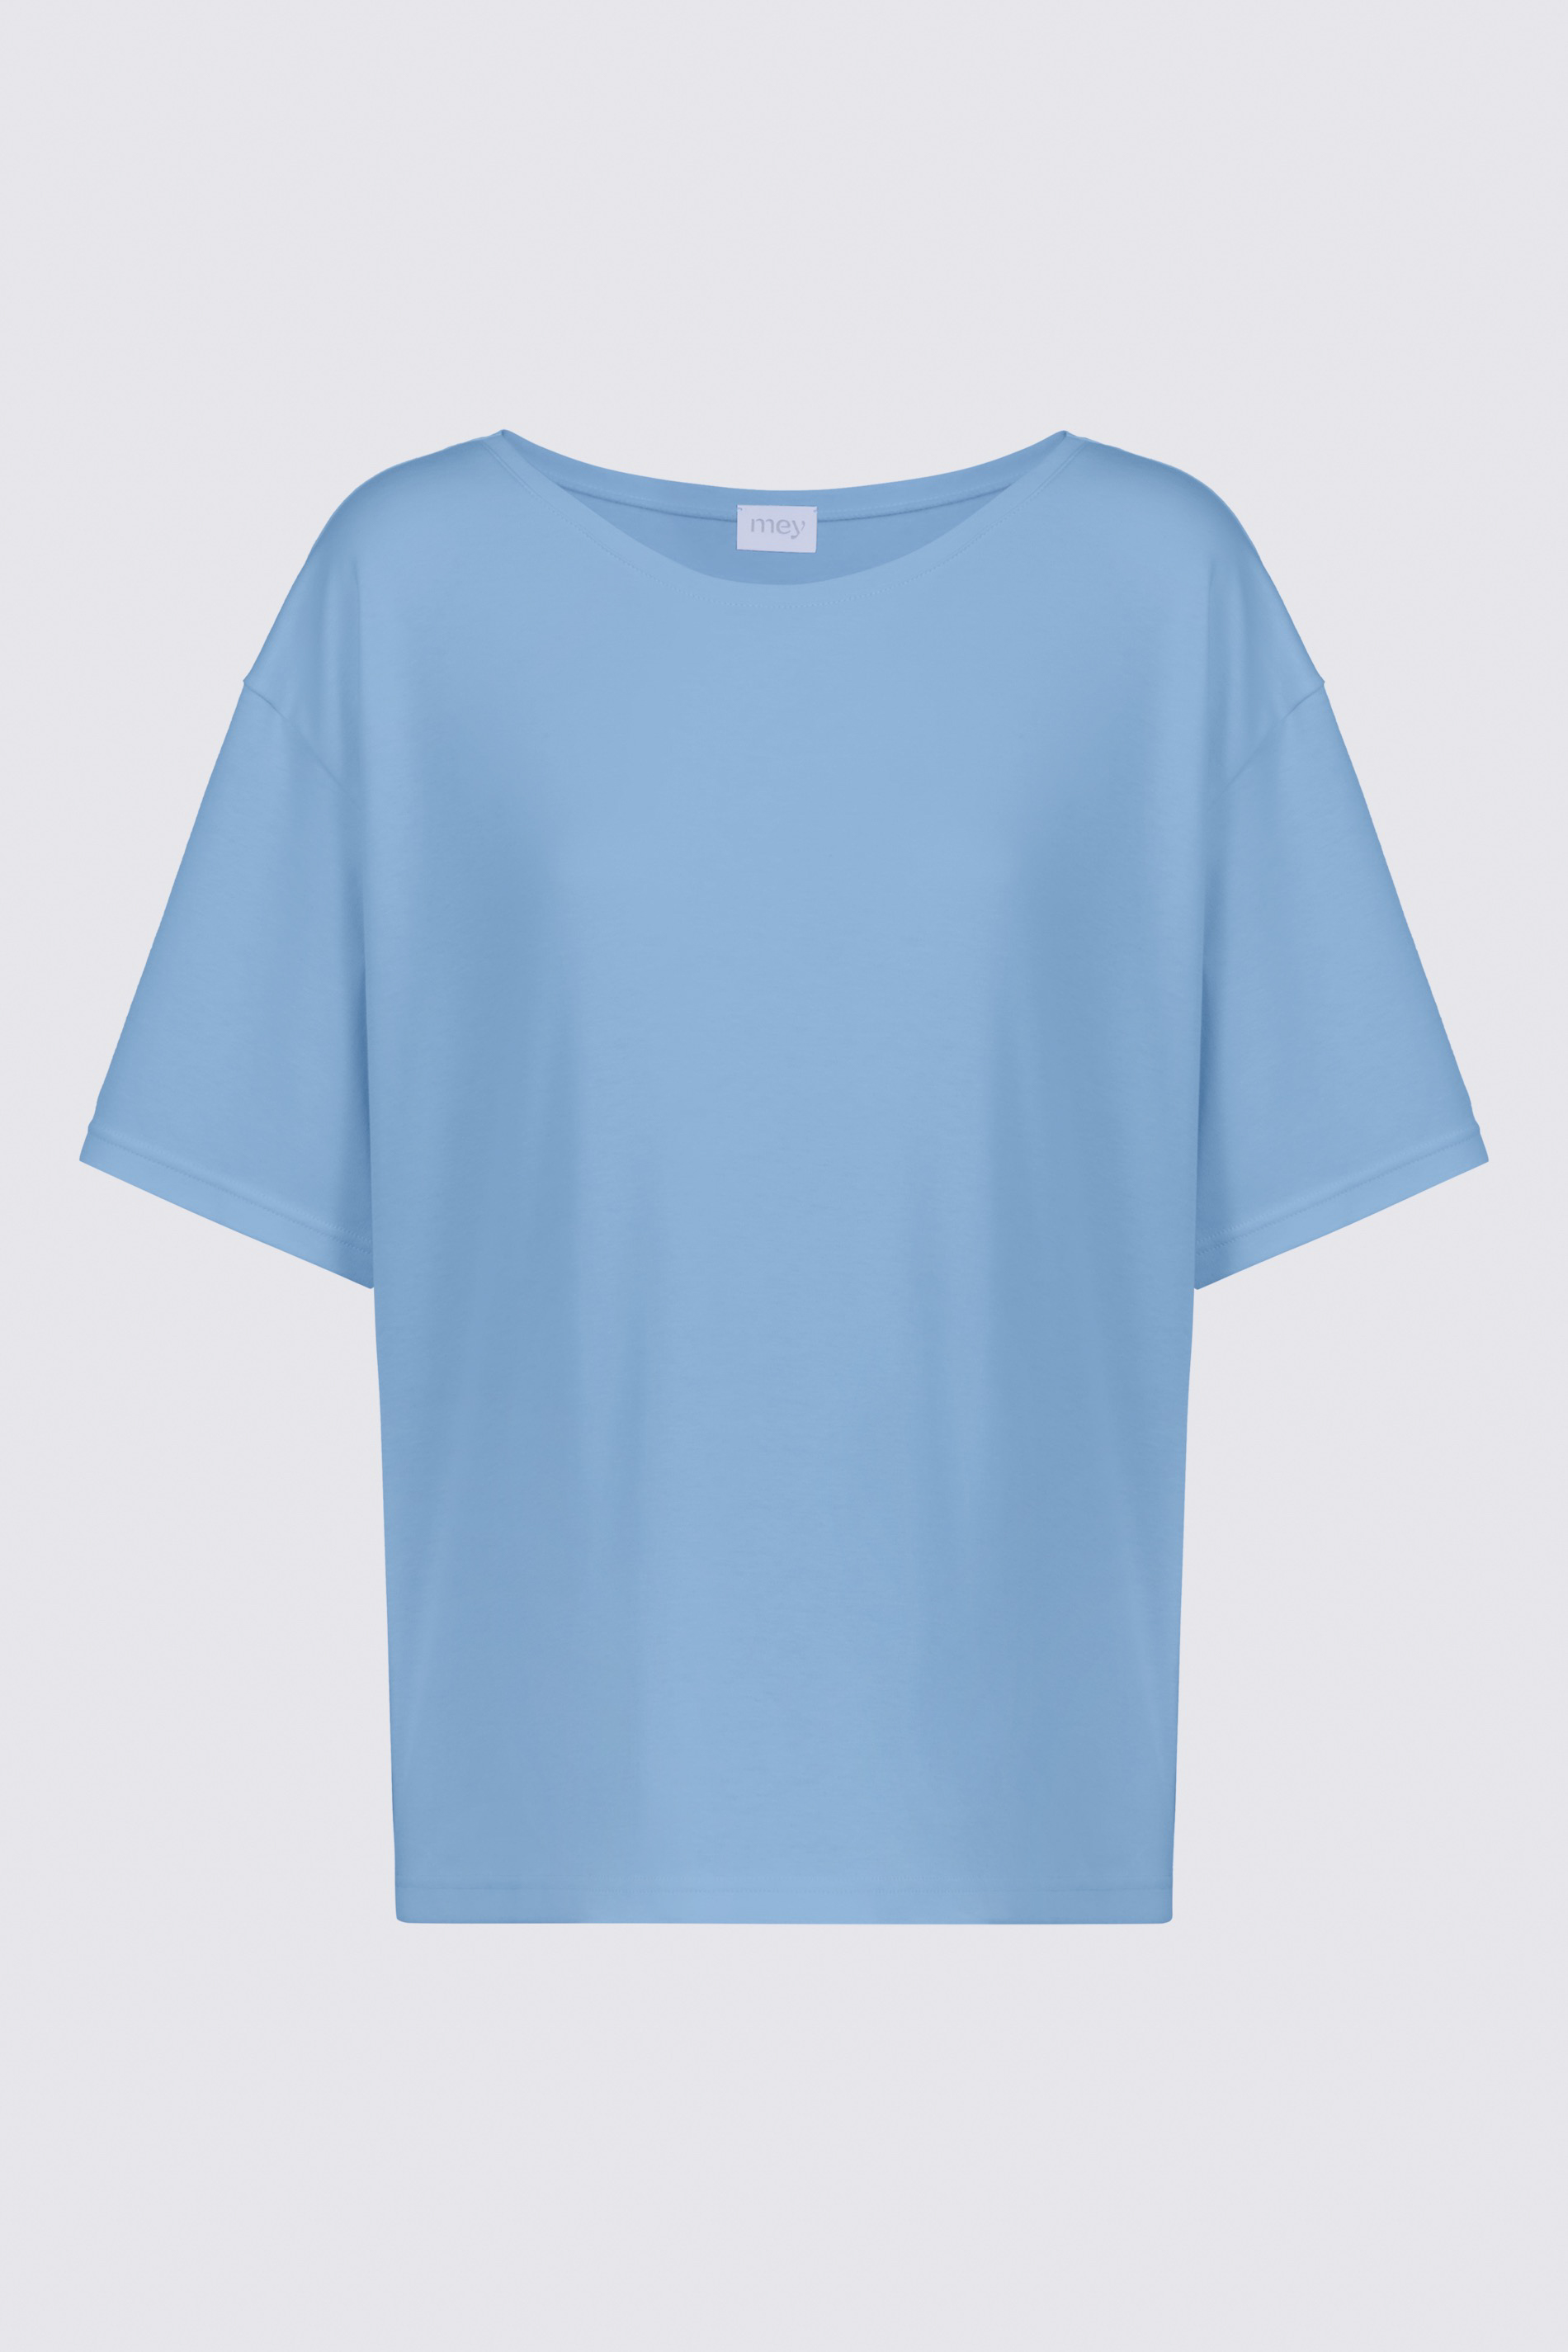 Shirt Serie Sleepy & Easy Freisteller | mey®